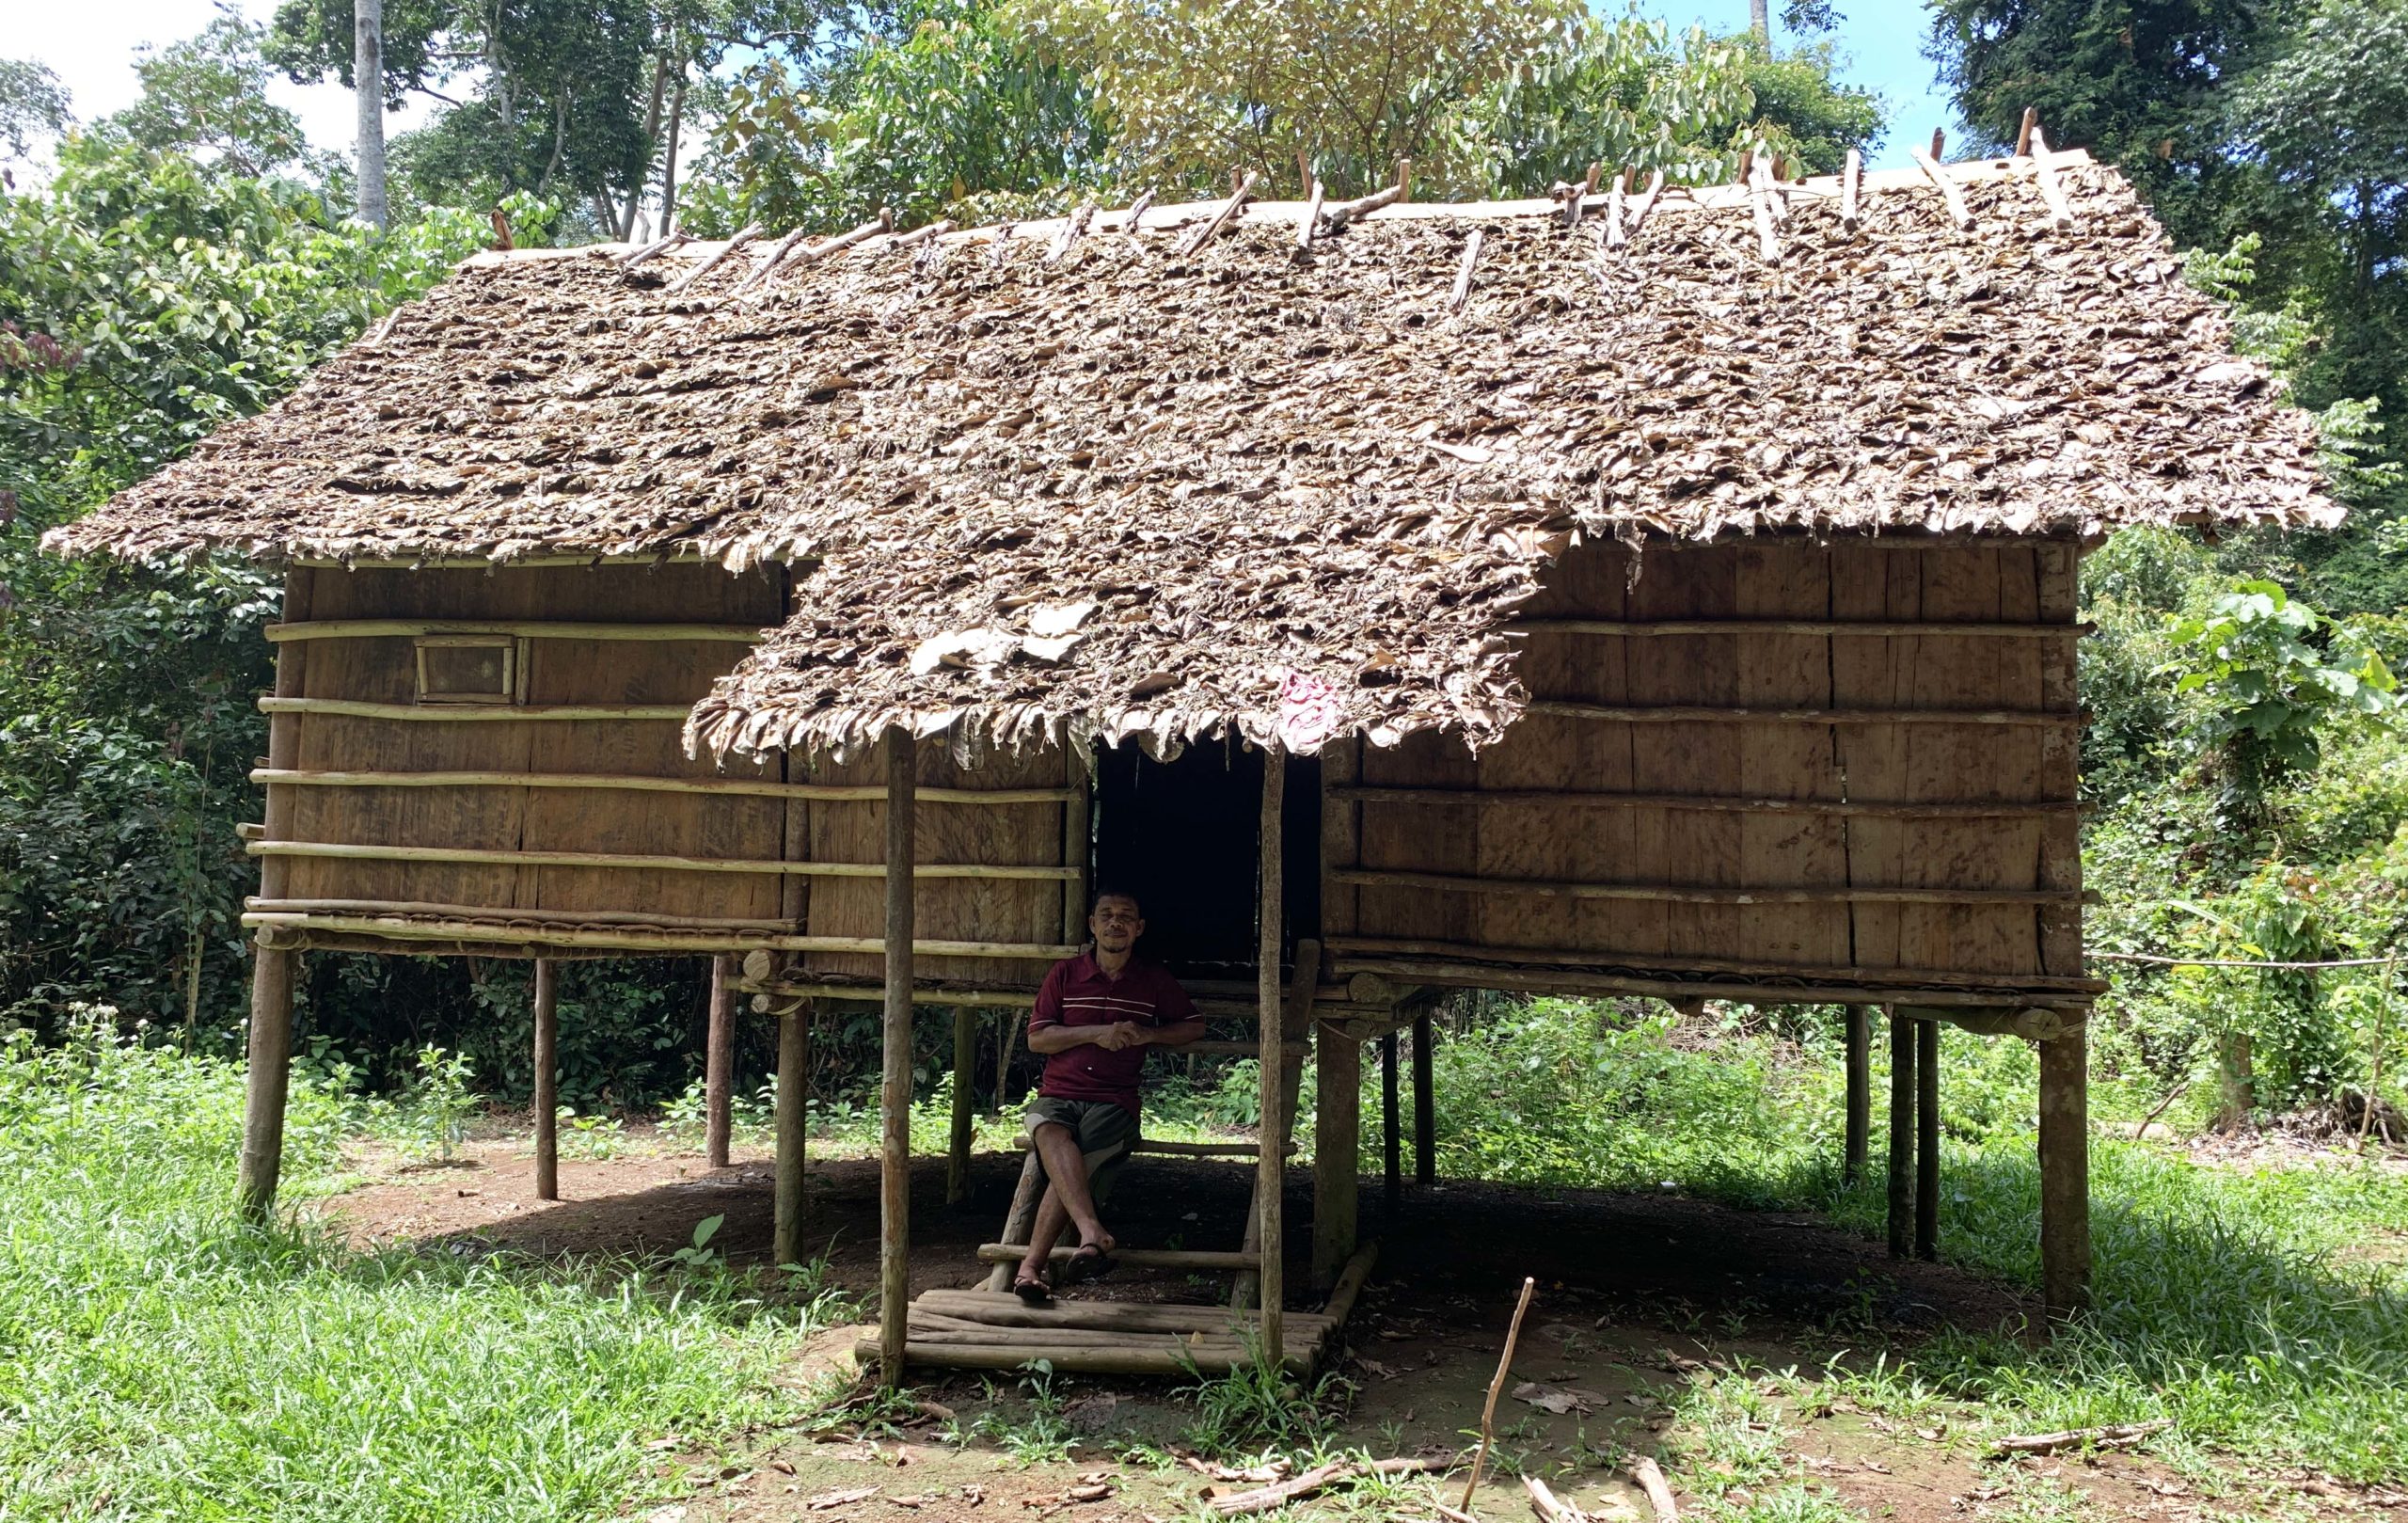 Rumah godong, rumah adat orang rimba yang menggunakan dinding dan lainati dari kulik kayu, serta atap dari daun. Foto: Yito Suprapto/ Mongabay Indonesia